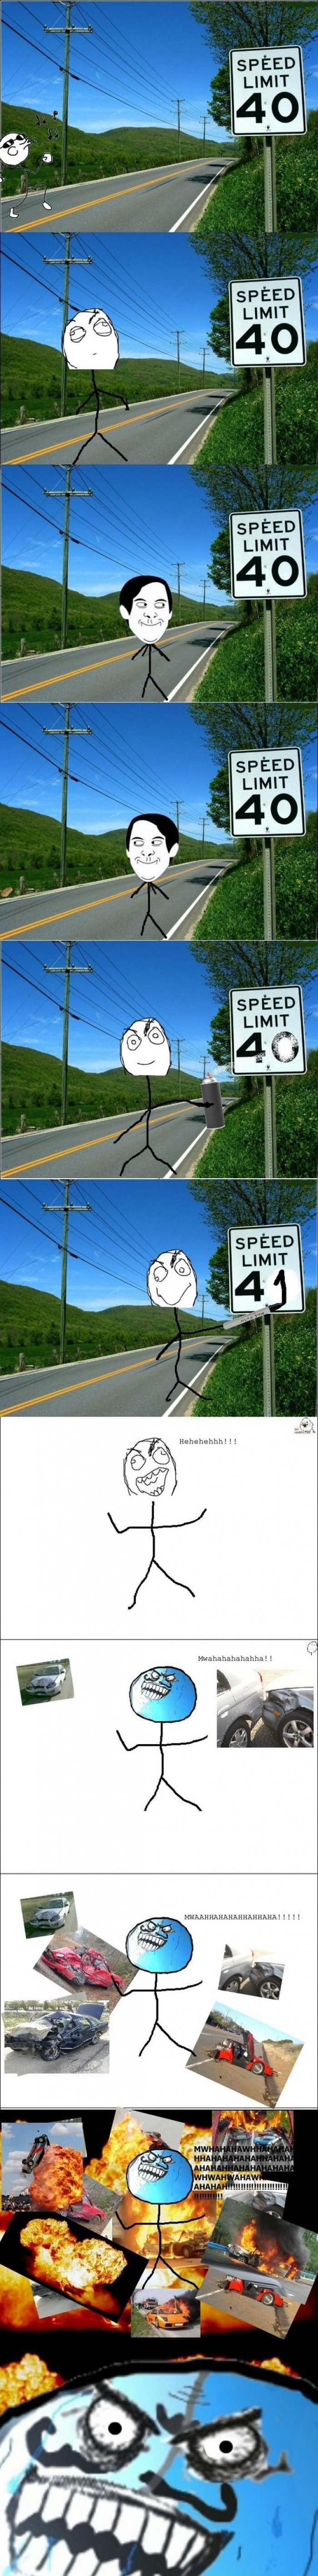 Speed Limit Trolling